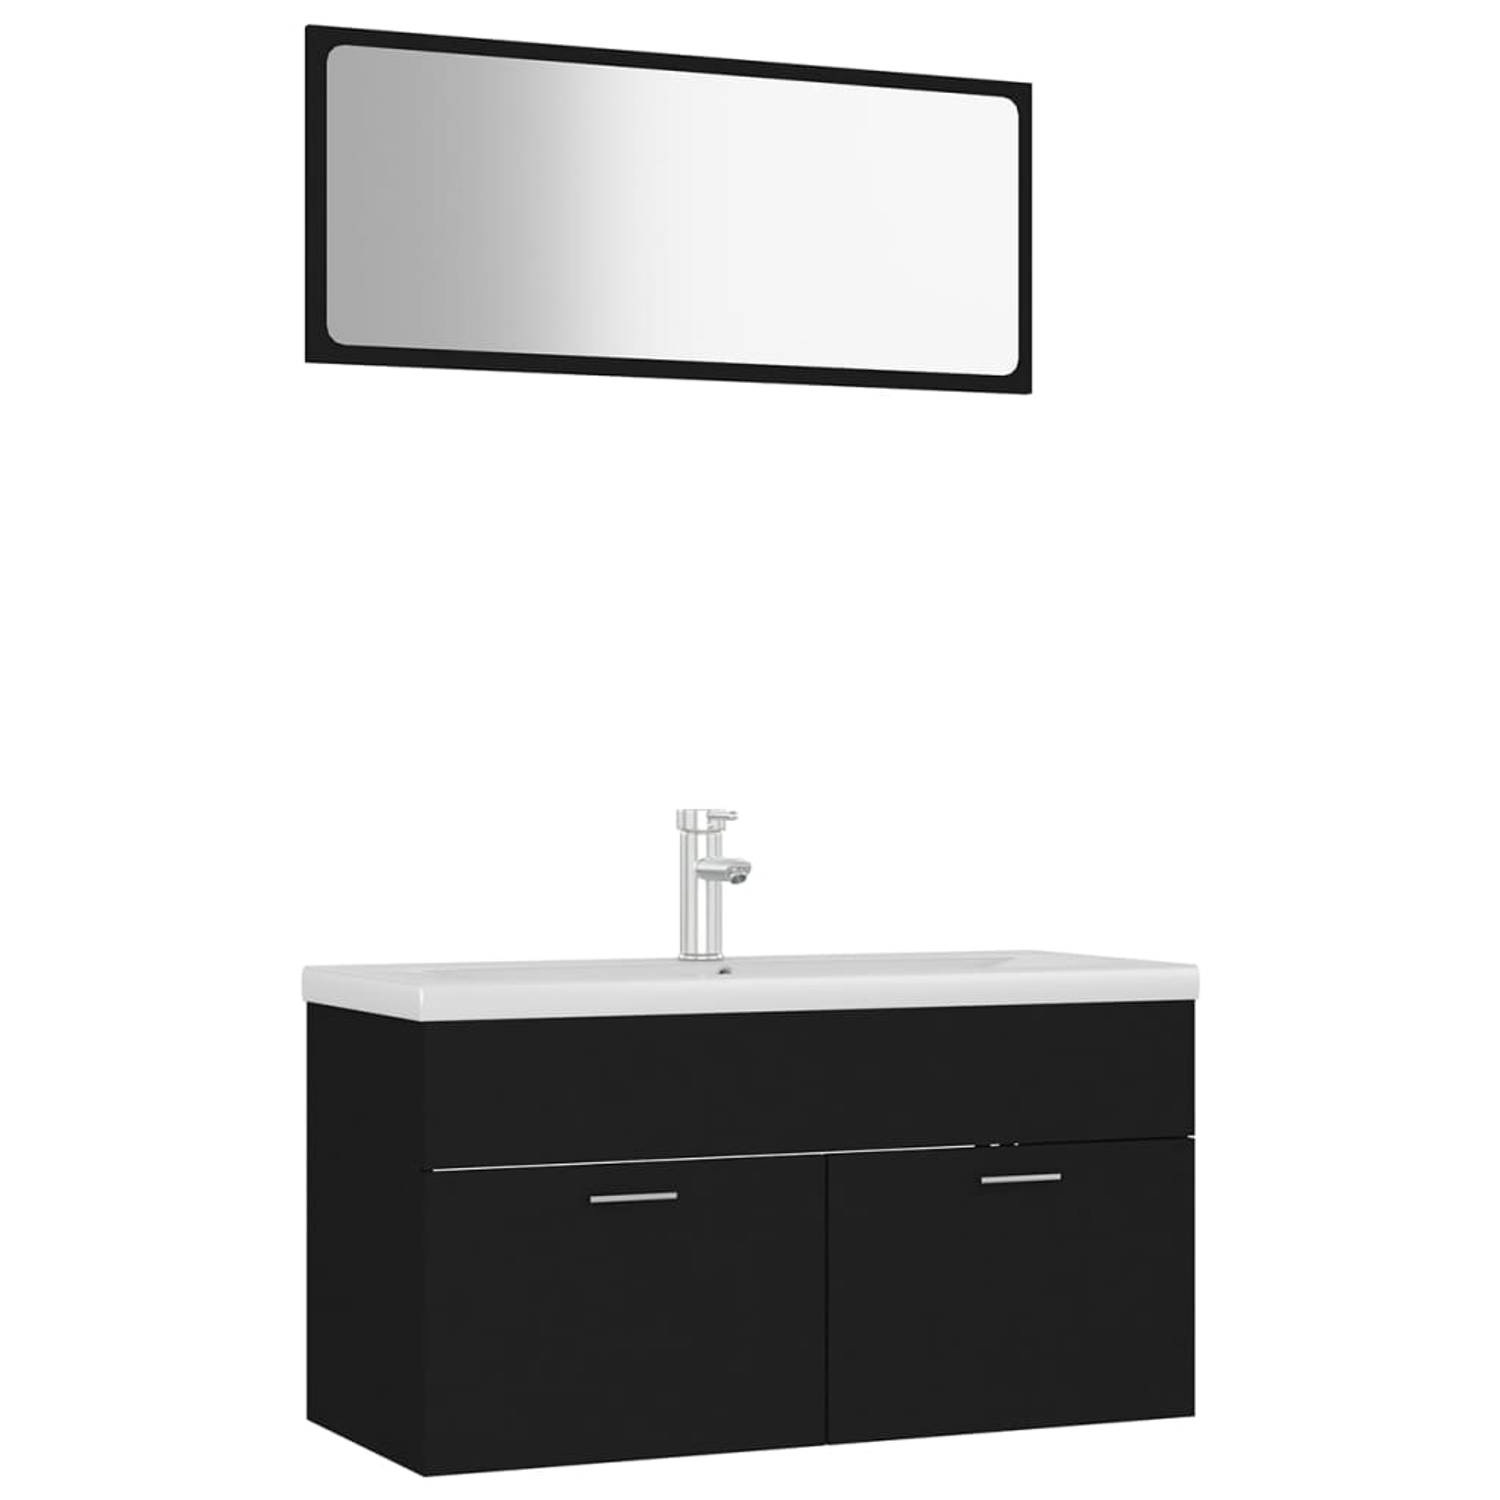 The Living Store Badkamermeubelset - zwart - 90 x 38.5 x 46 cm - keramiek - 91 x 39.5 x 18.5 cm - overloop - zwart - 90 x 1.5 x 37 cm - montage vereist